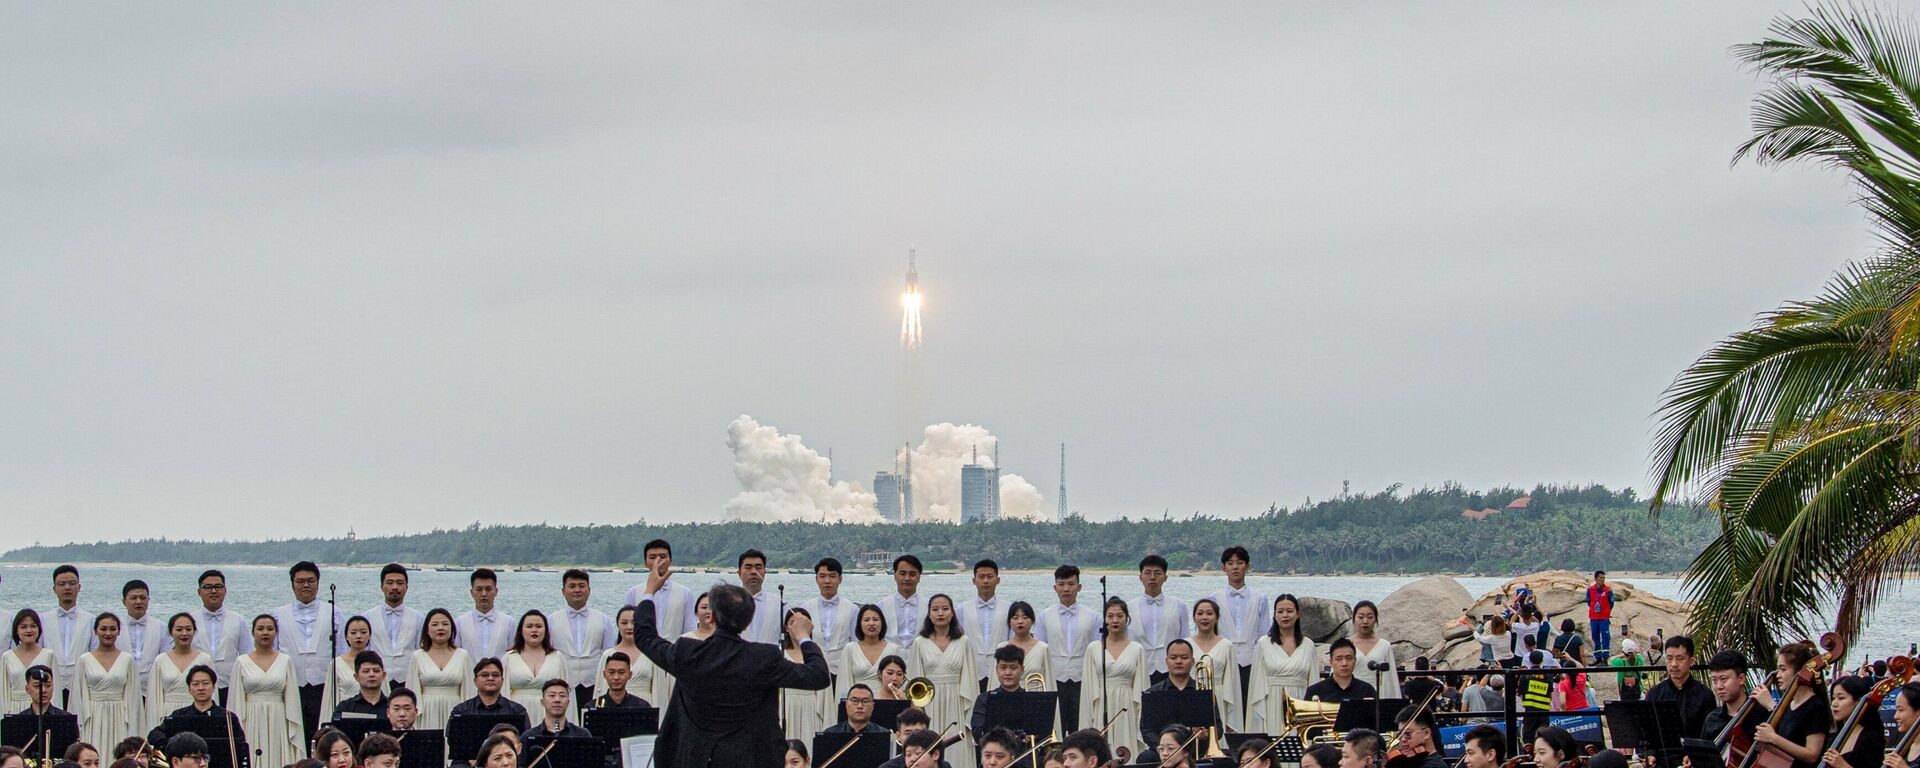 El cohete Long March 5B despega mientras una banda toca música - Sputnik Mundo, 1920, 06.05.2021